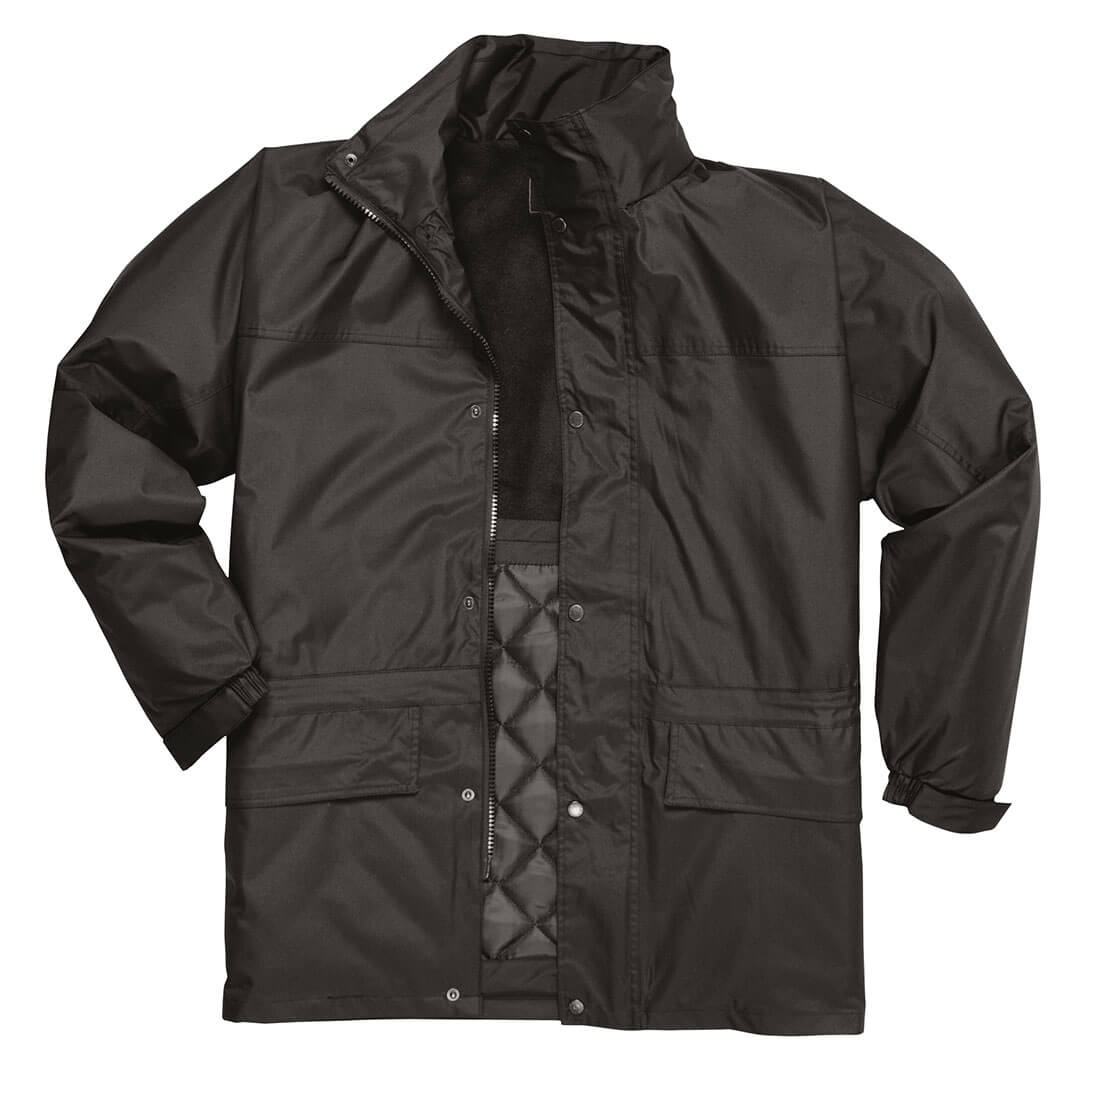 Oban Fleece Lined Jacket - Safetywear